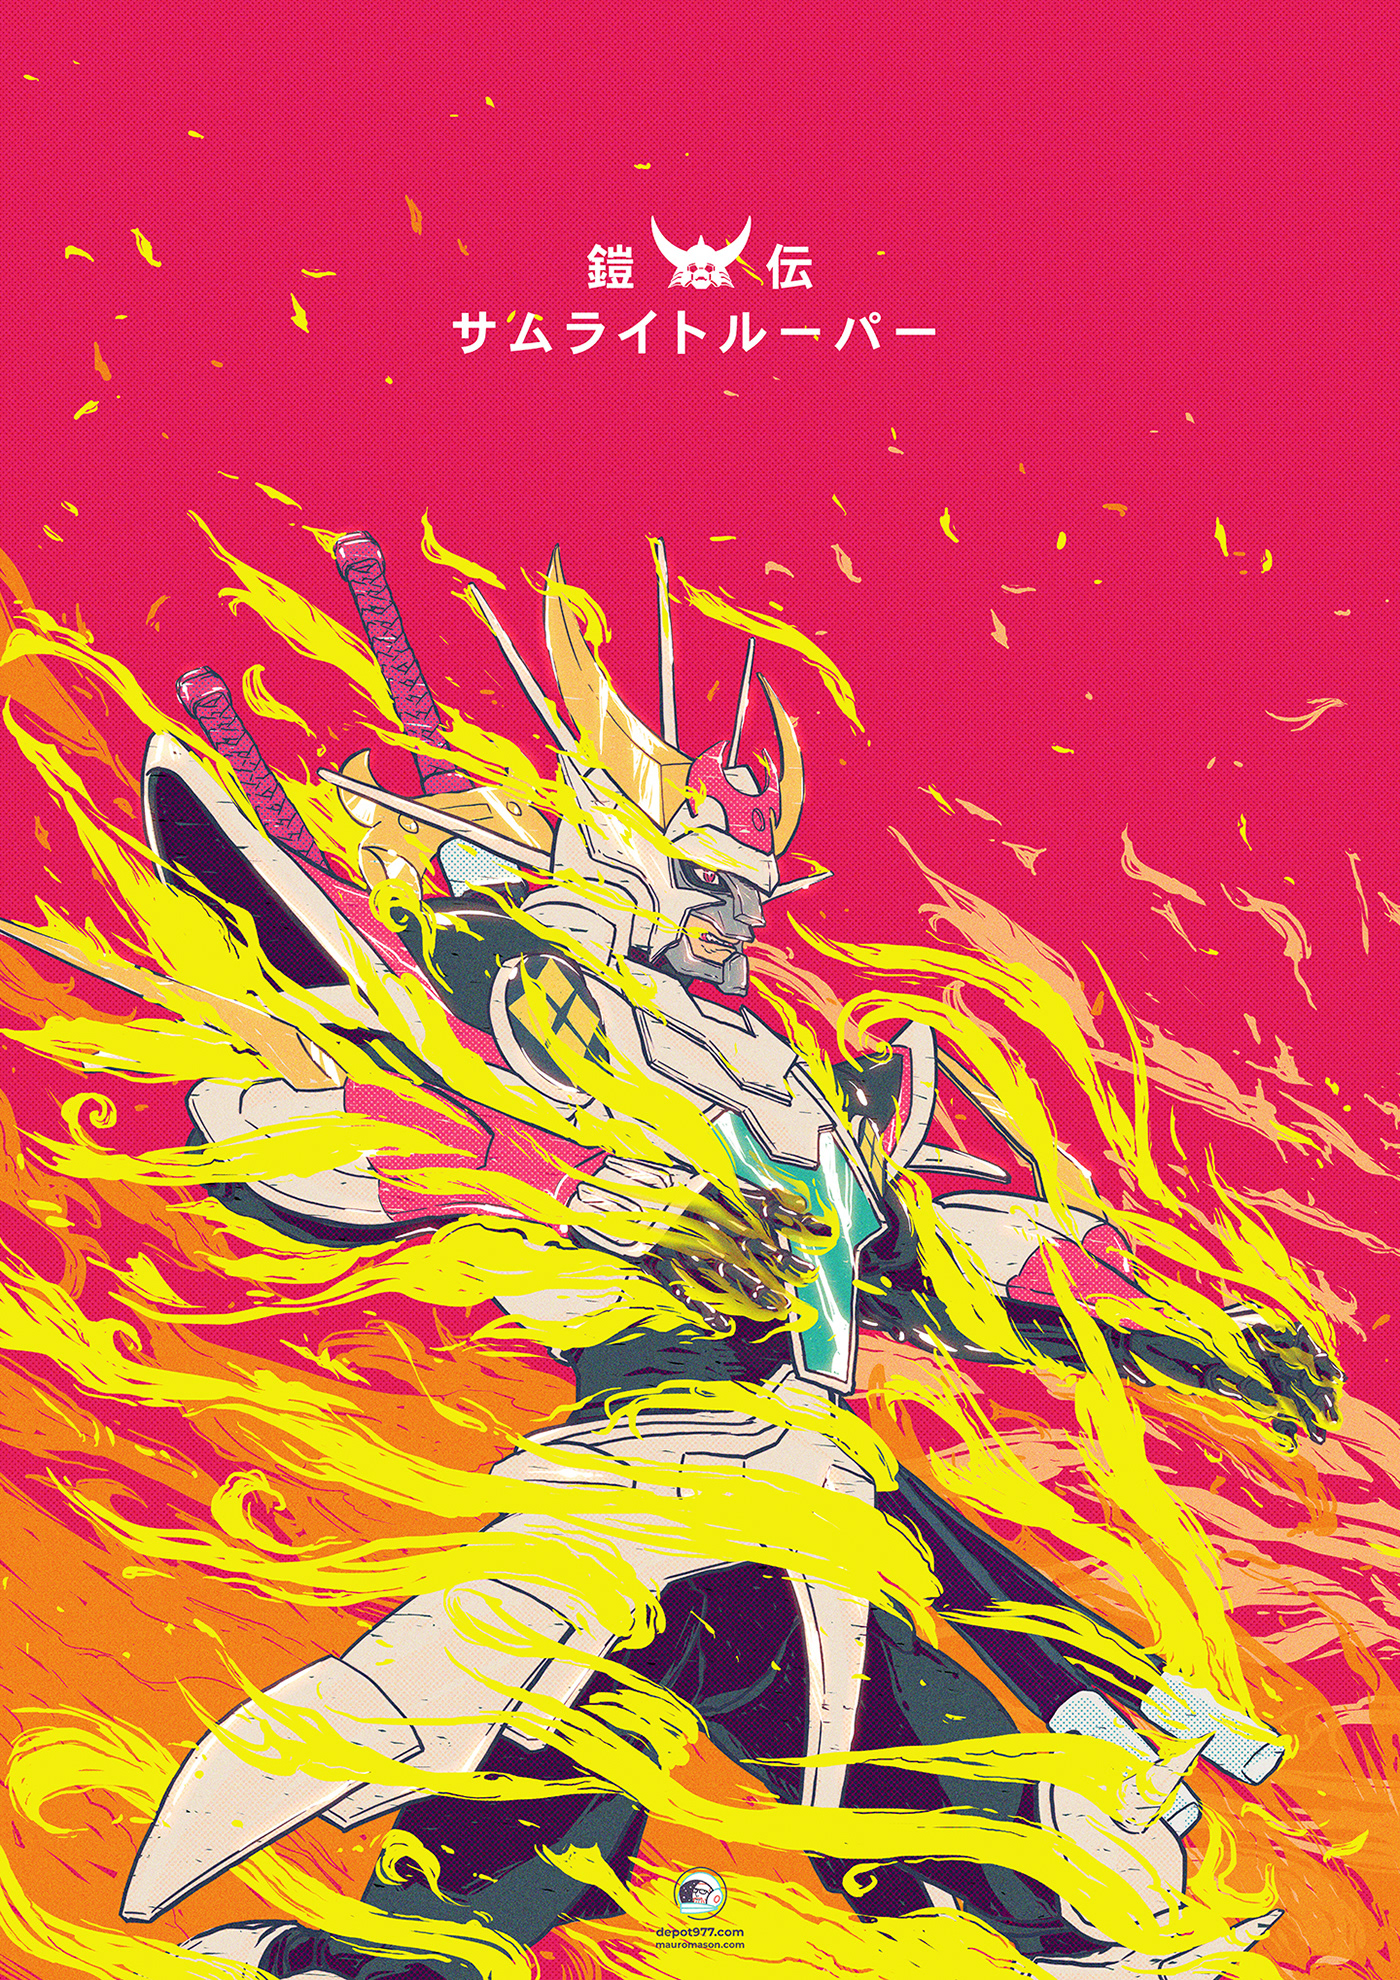 Yoroiden Samurai Troopers ronin warriors 5 Samurai brilliant samurai Flames anime tribute fanarti deckard977